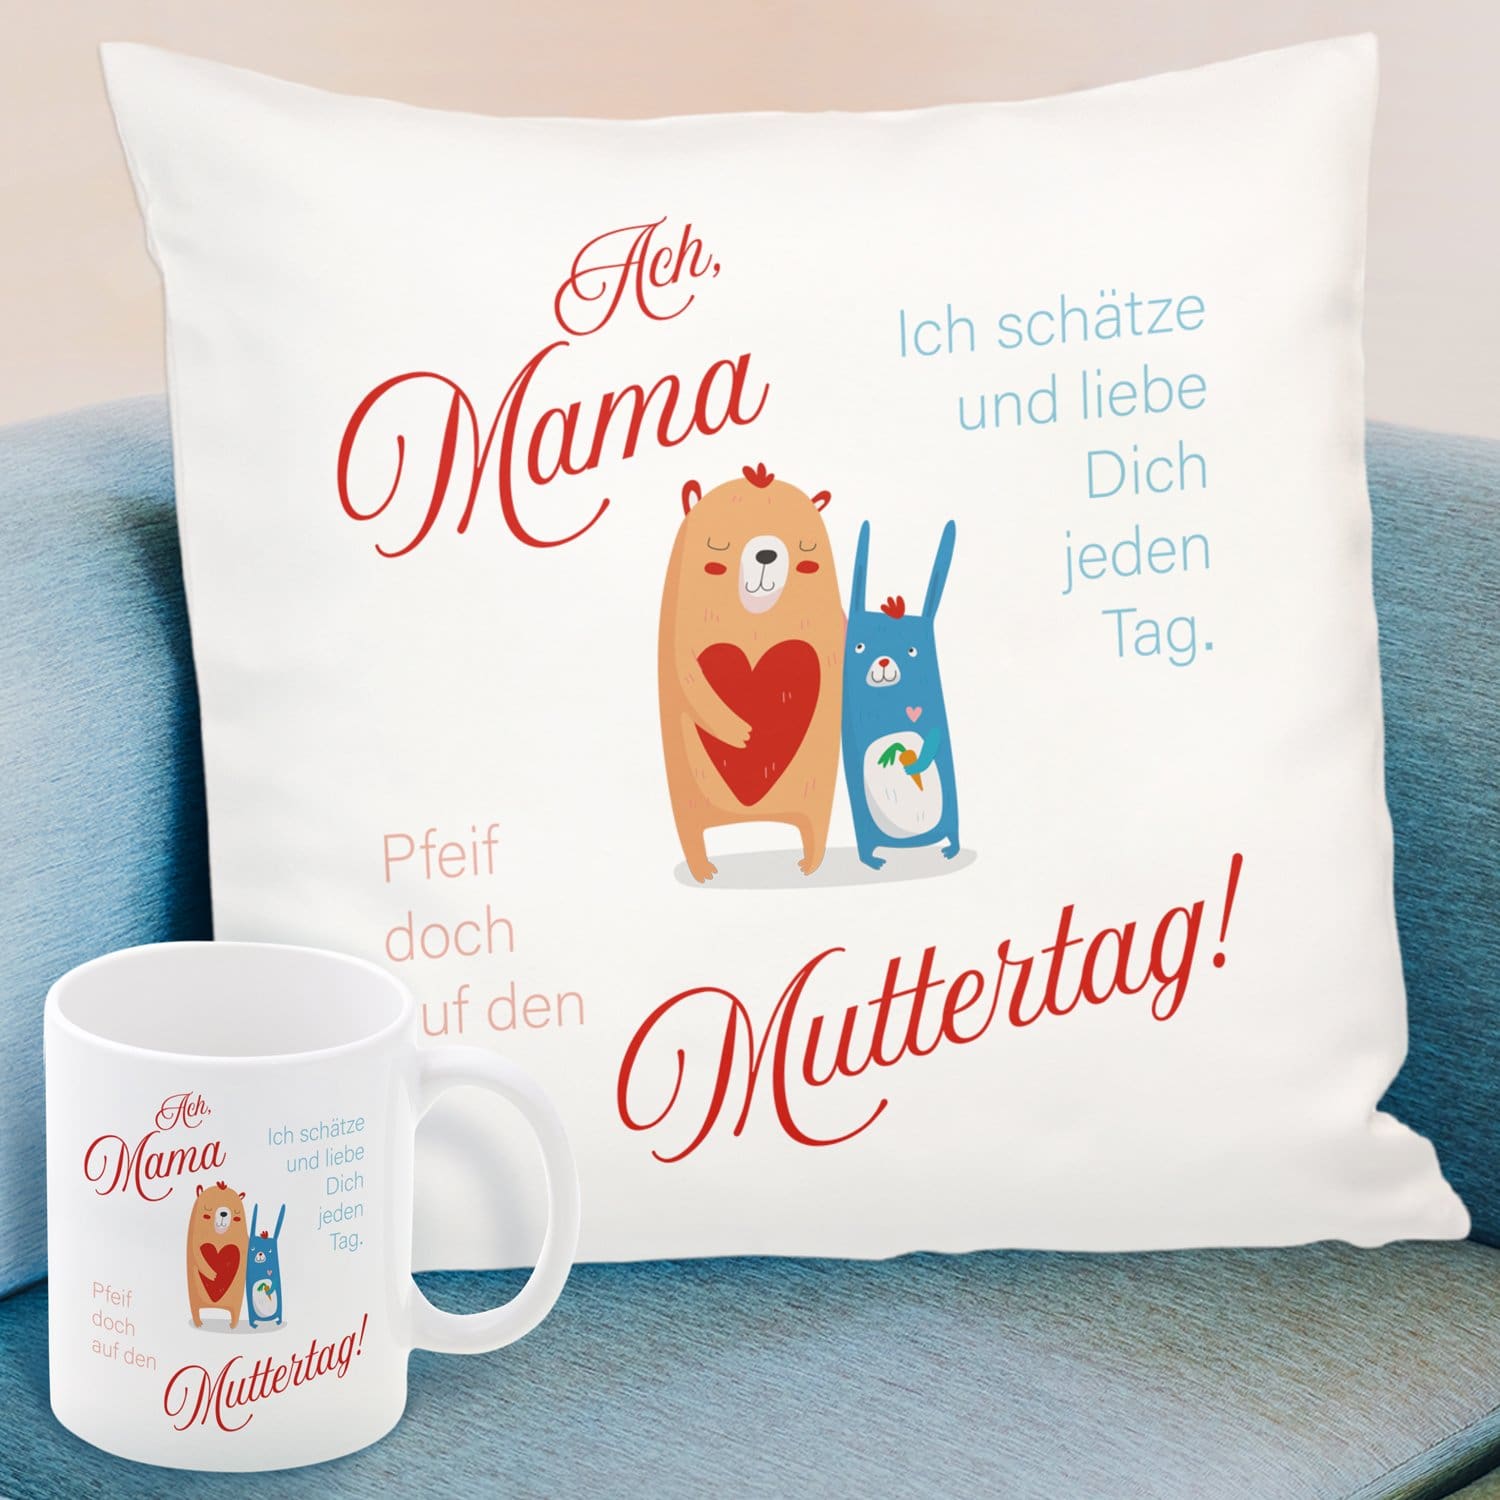 Pfeif auf Muttertag - Geschenk Set für Mamas